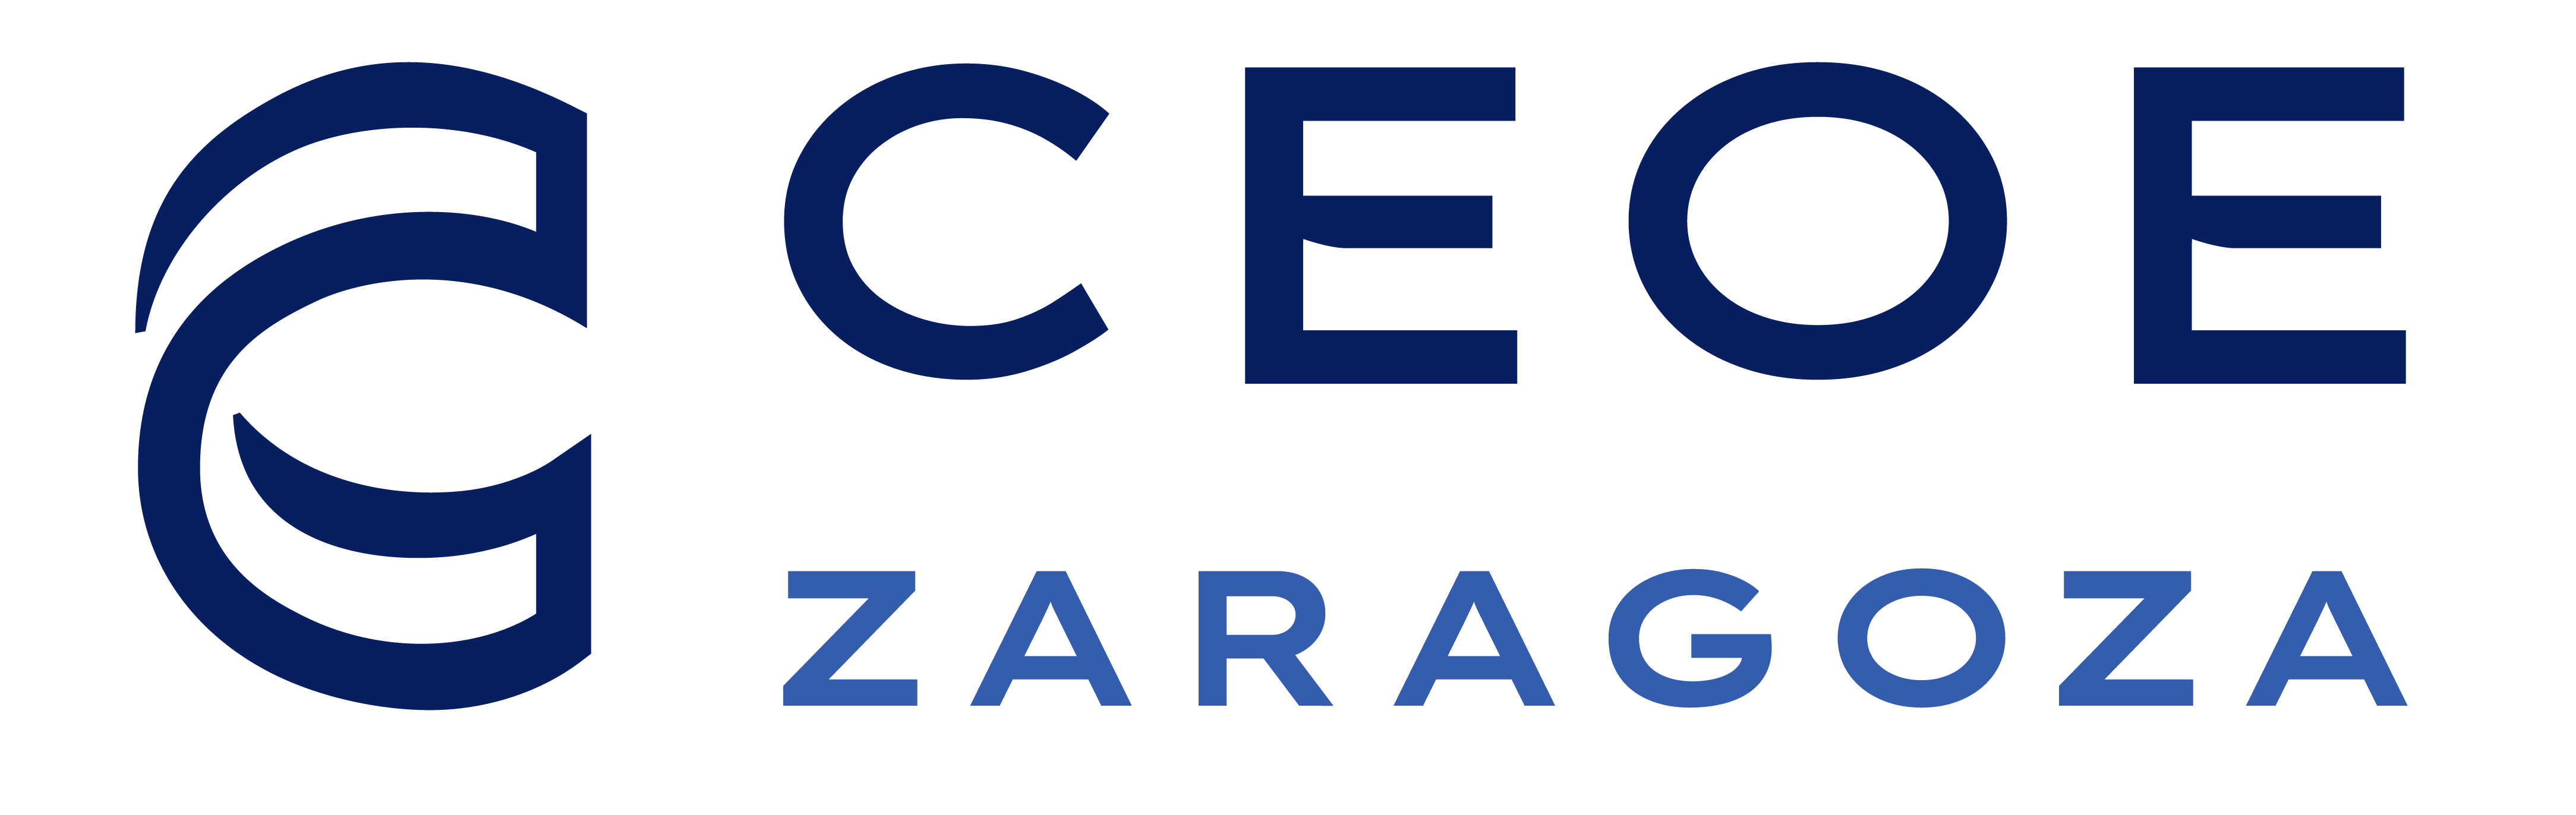 CEOE Zaragoza